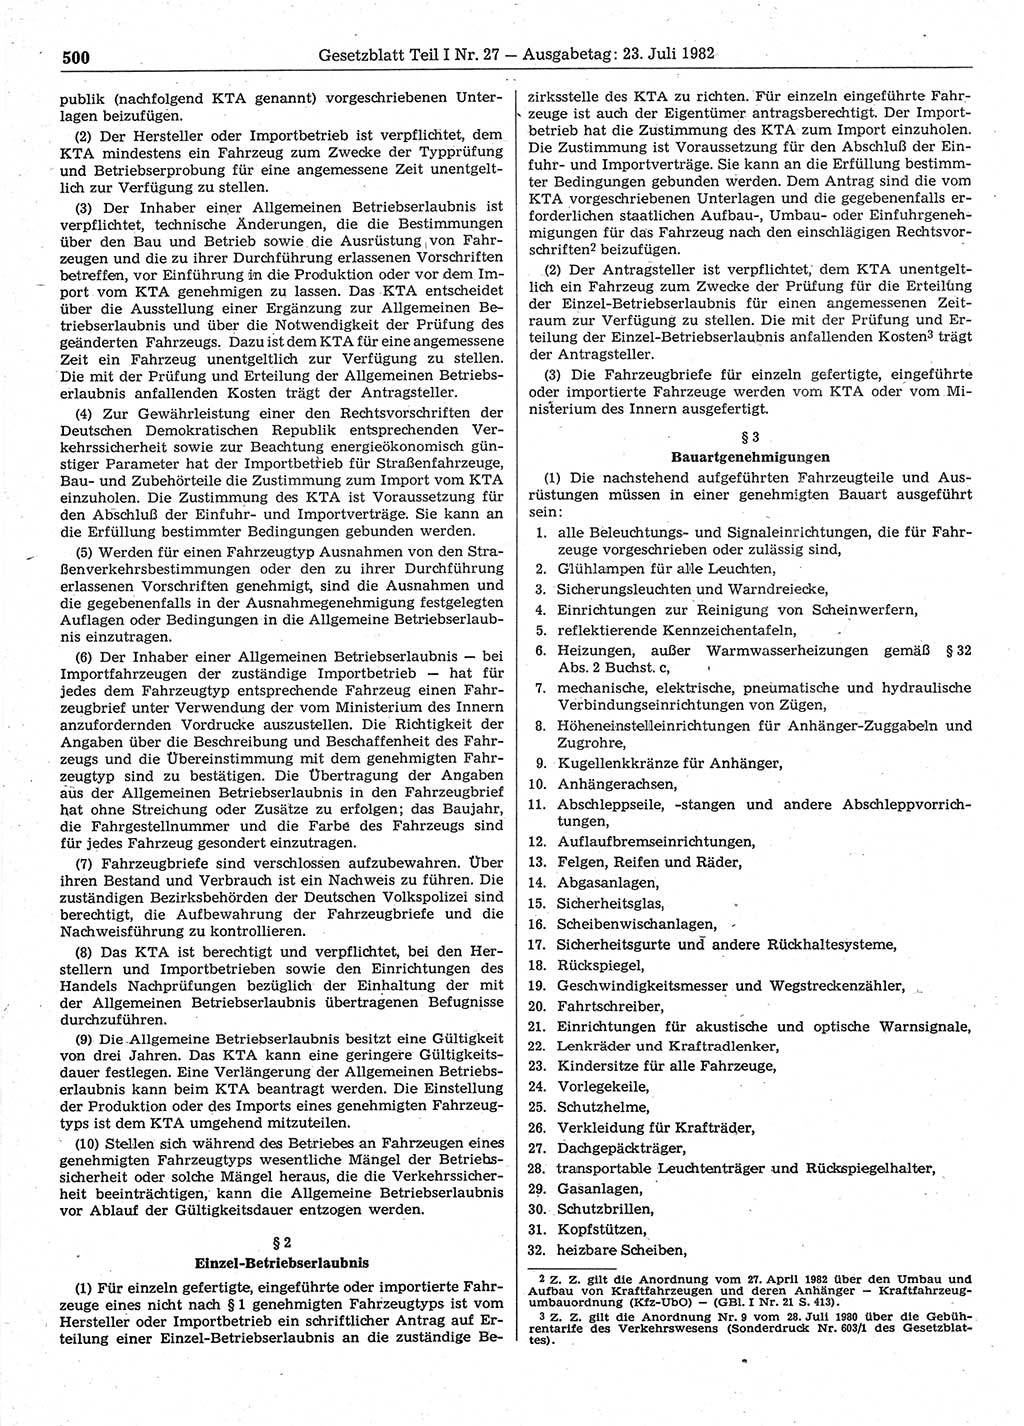 Gesetzblatt (GBl.) der Deutschen Demokratischen Republik (DDR) Teil Ⅰ 1982, Seite 500 (GBl. DDR Ⅰ 1982, S. 500)